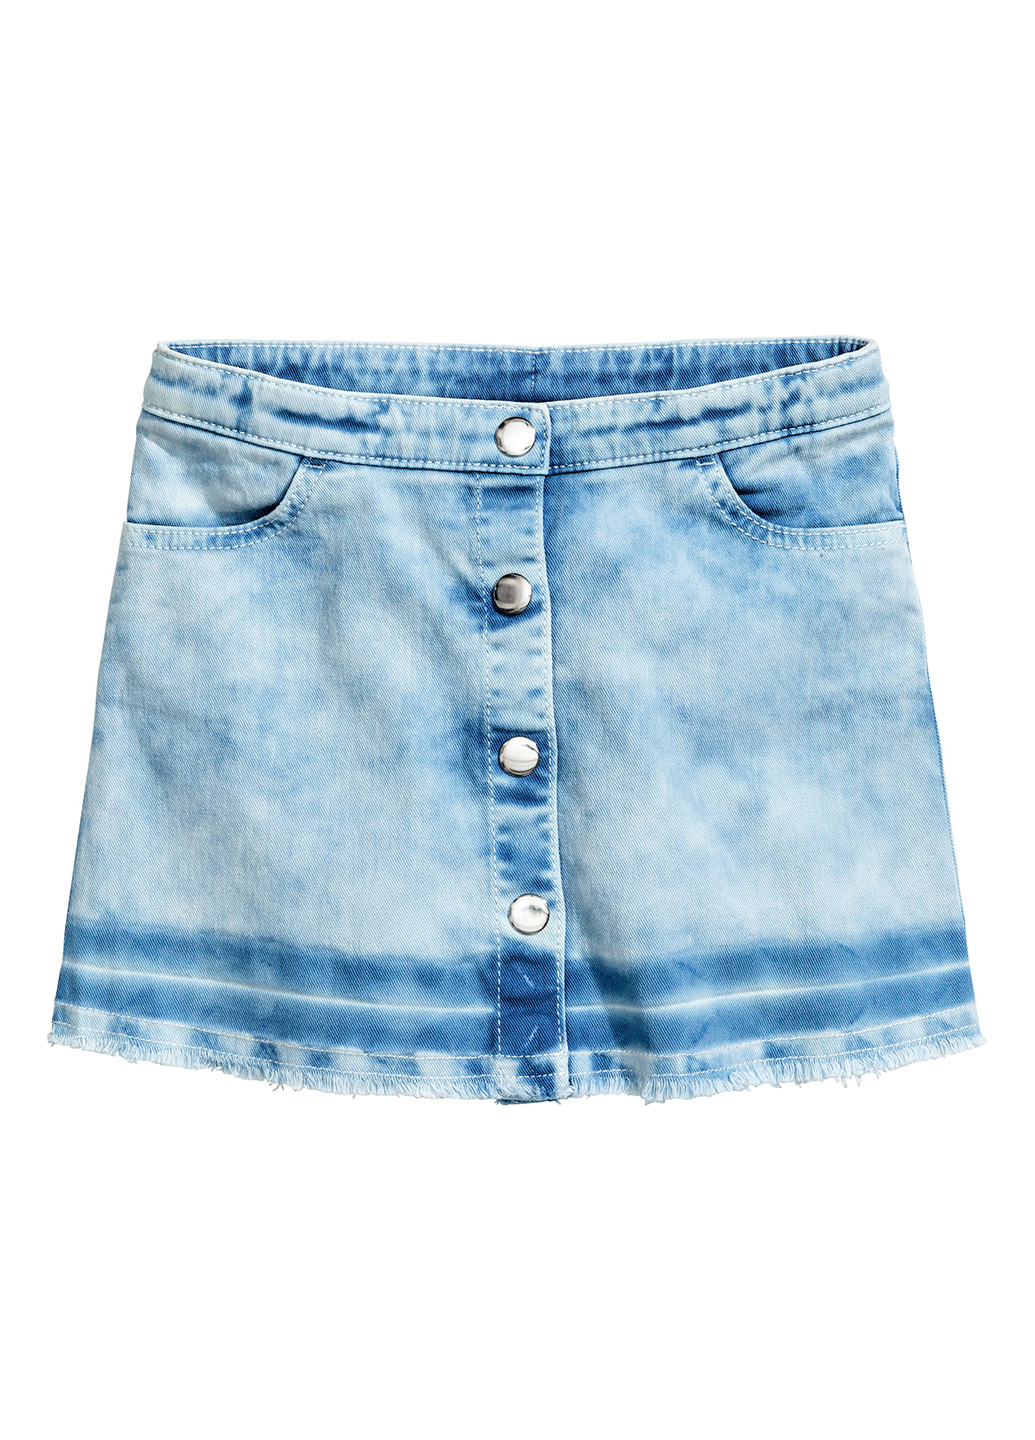 Голубая джинсовая градиентной расцветки юбка H&M мини